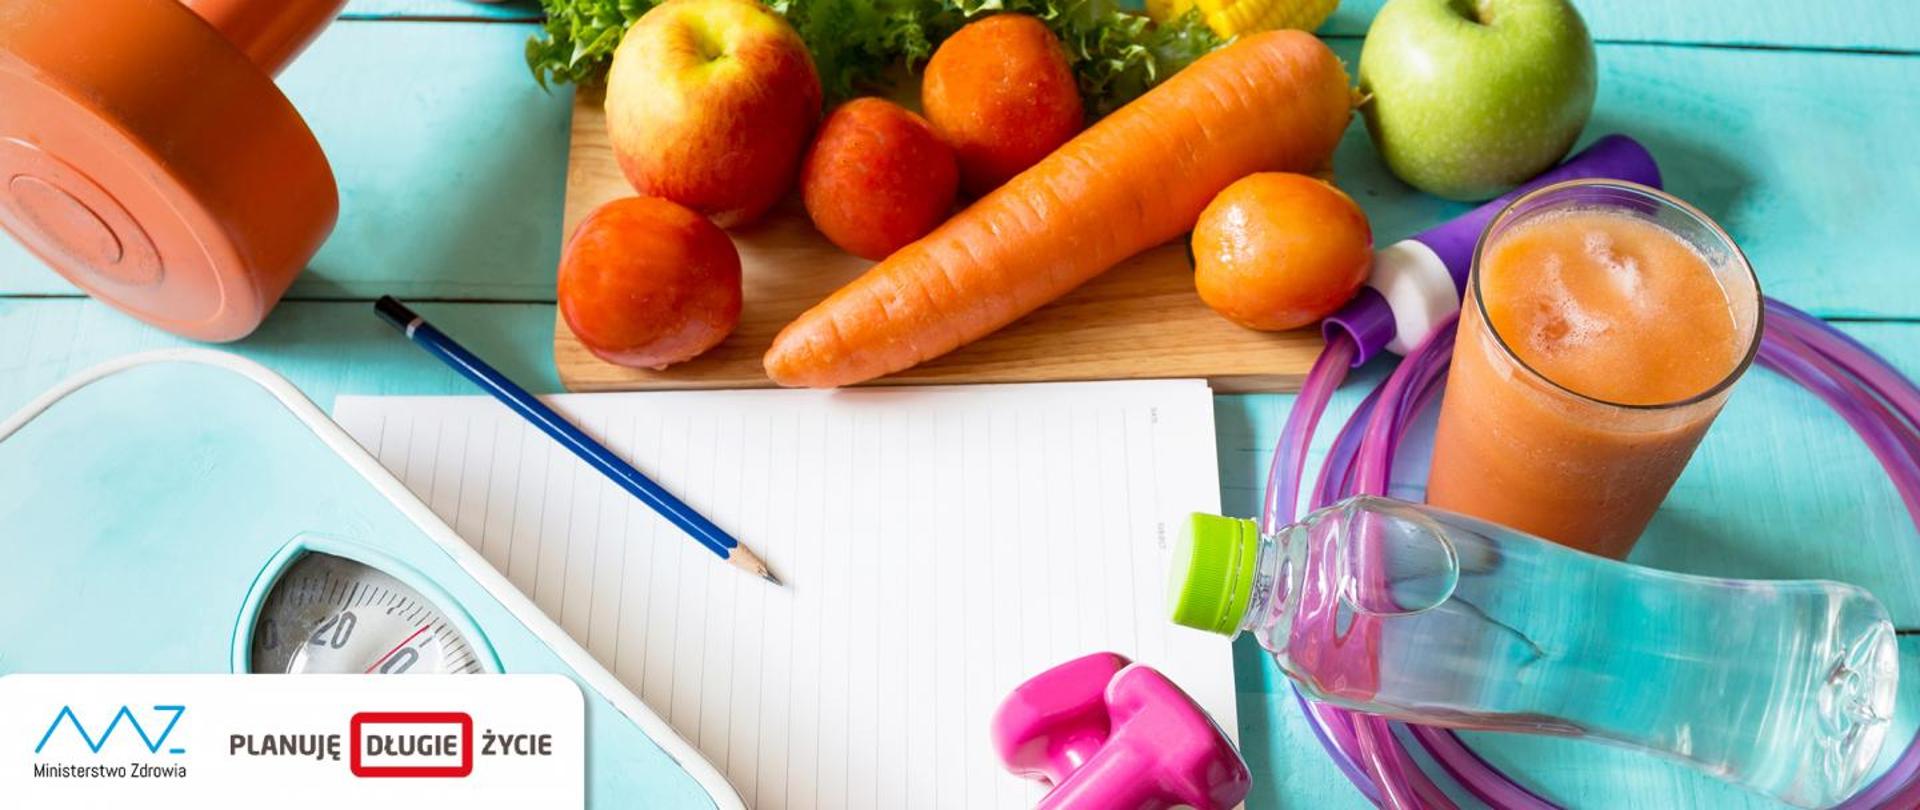 Leżące na stole: ciężarki, skakanka, waga, ołówek, kartka papieru, warzywa, owoce, butelka wody, szklanka soku.